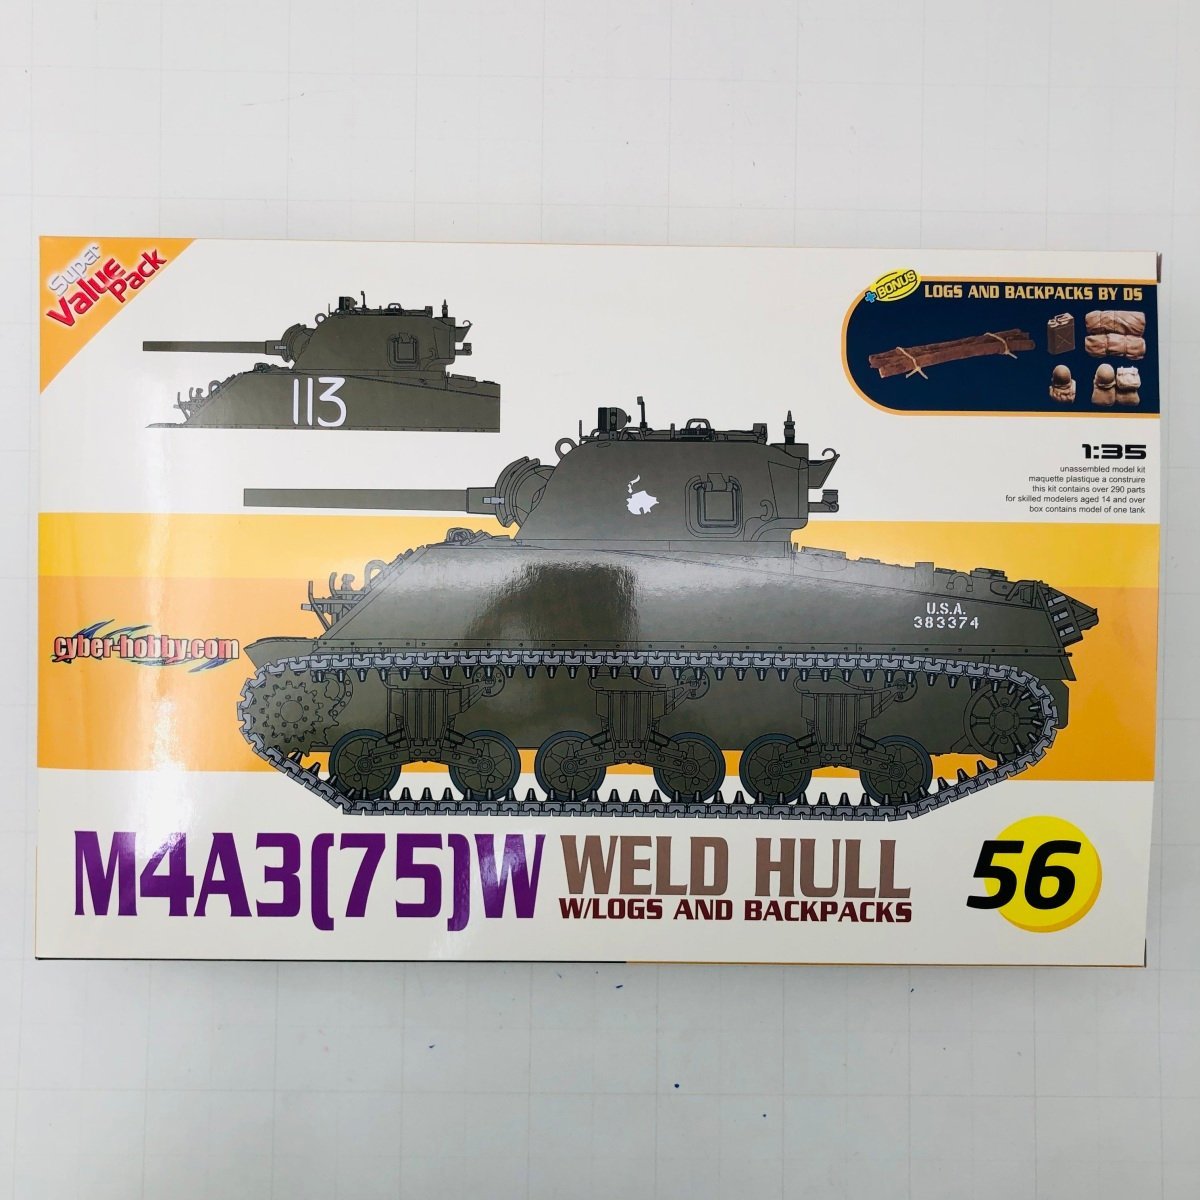 新品未組立 ドラゴン 1/35 WW.II アメリカ軍 M4A3 75 W 溶接車体_画像1